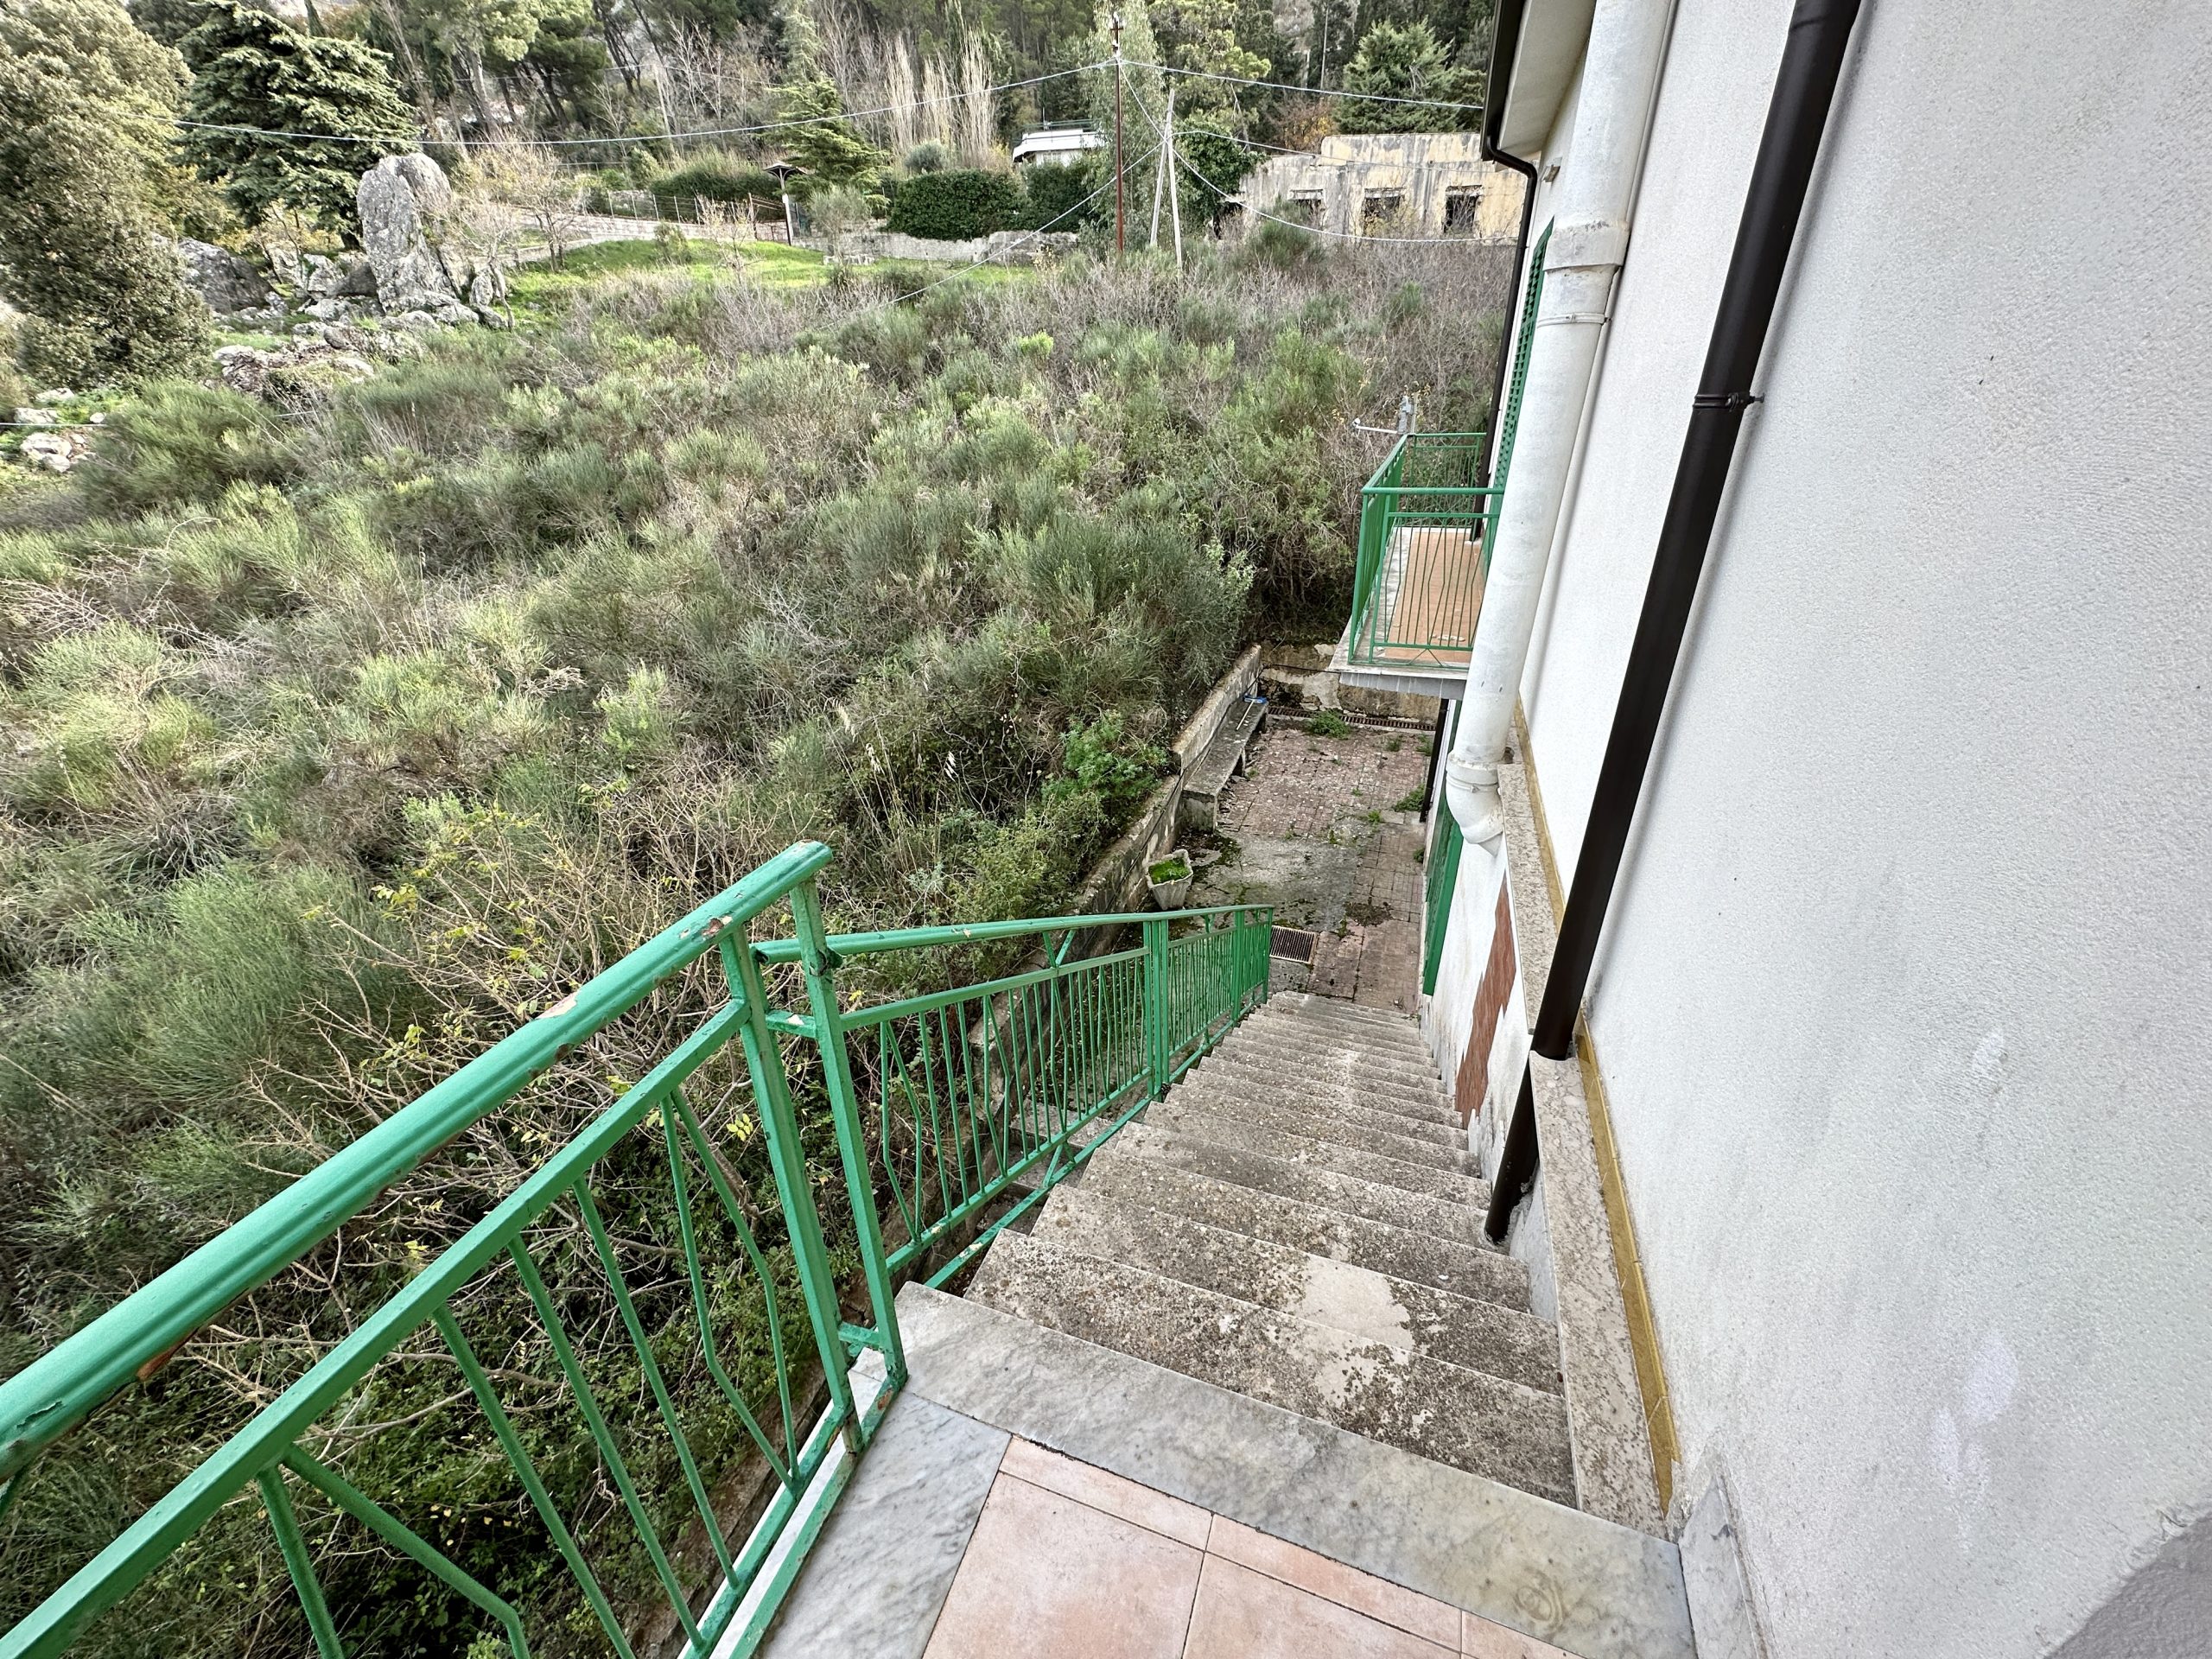 Villa in vendita a Romitello, Borgetto